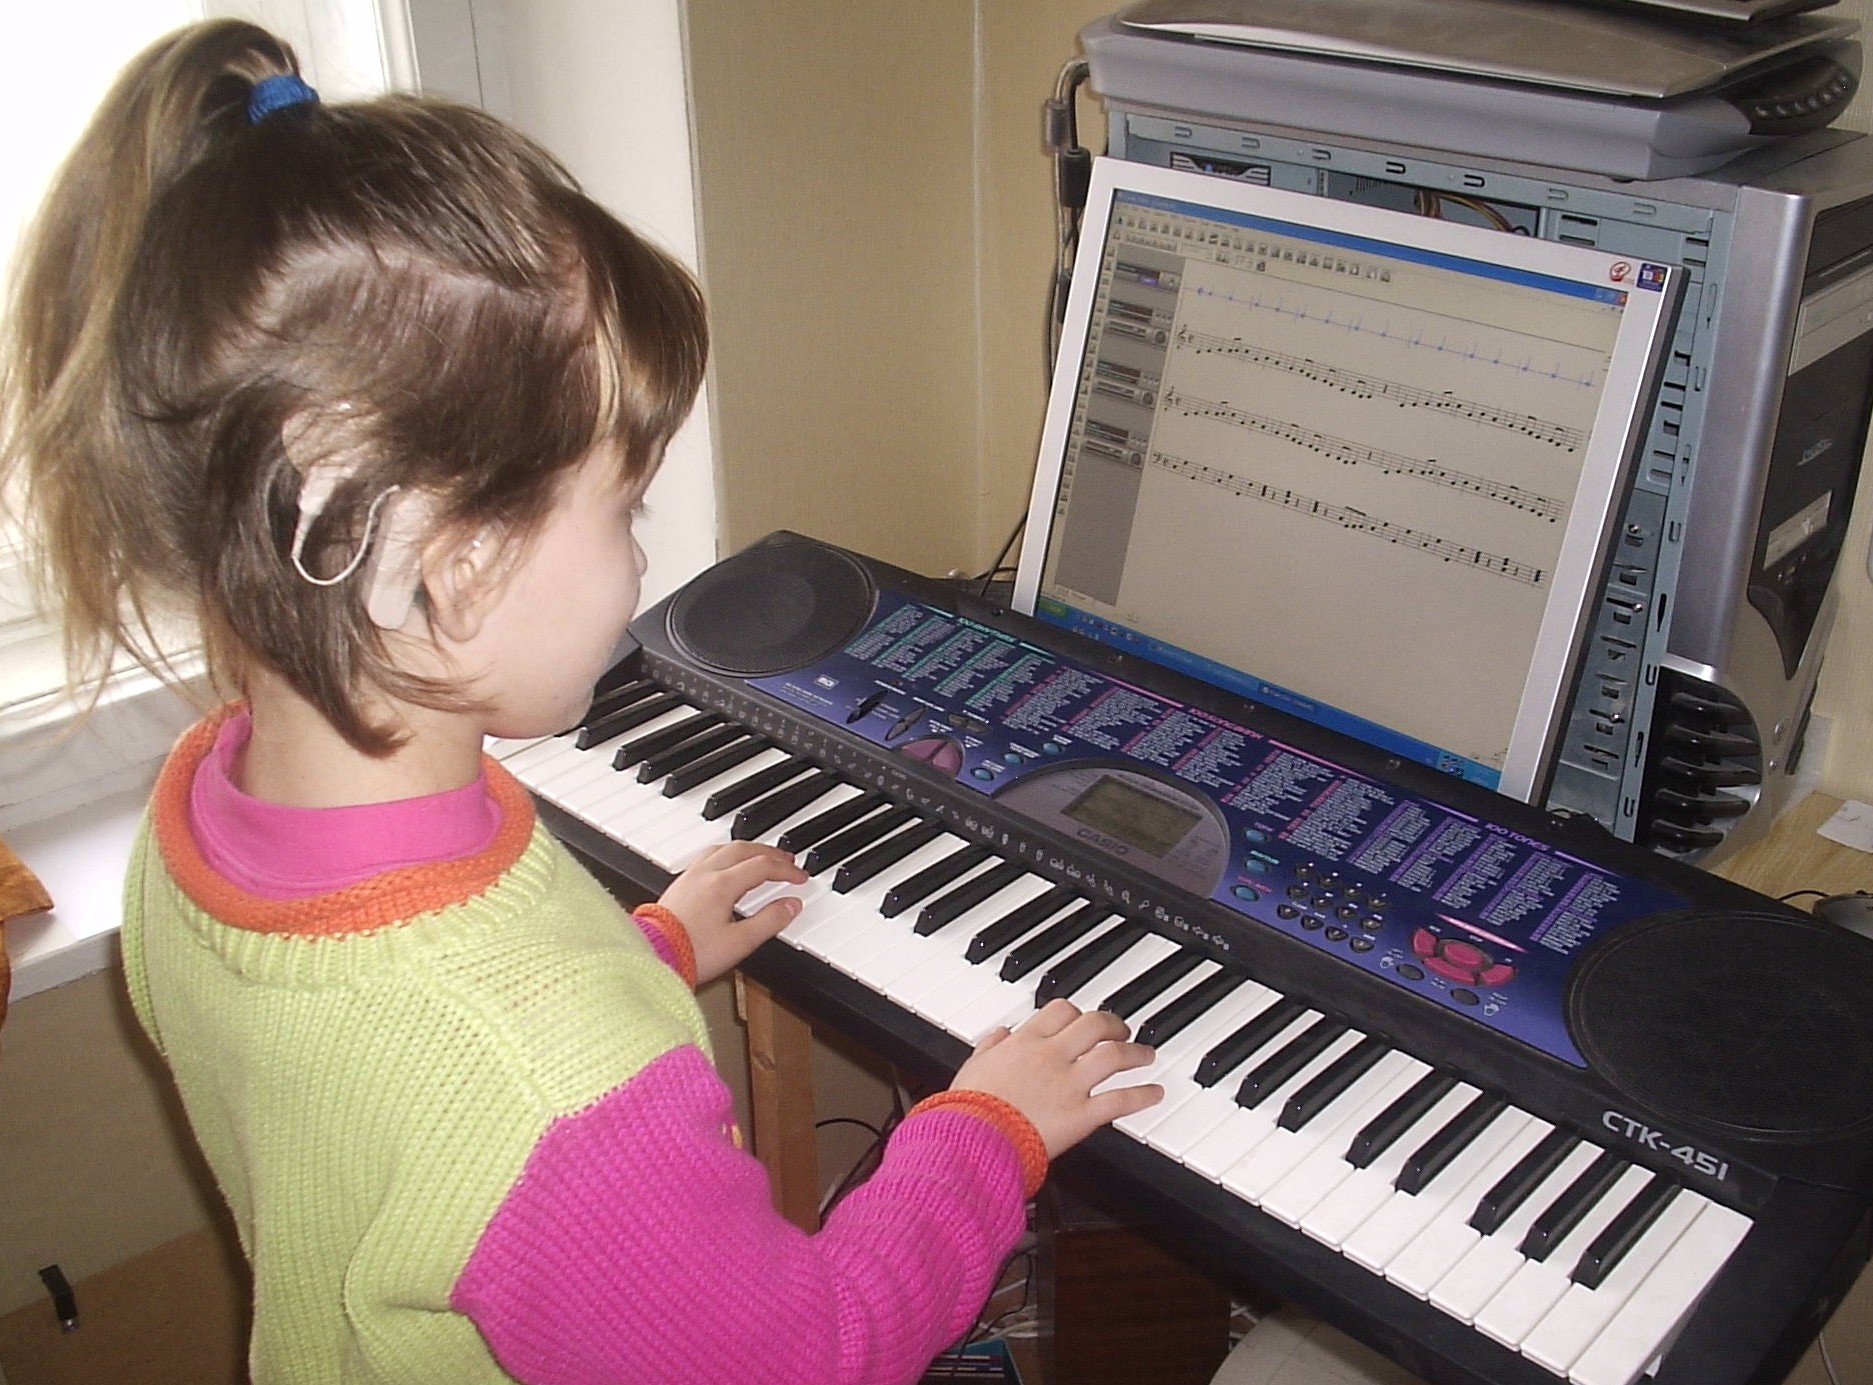 Игры использующие музыку. Музыкальные компьютерные технологии. Урок в музыкальной школе. Современное музыкальное образование. Современная музыкальная школа.